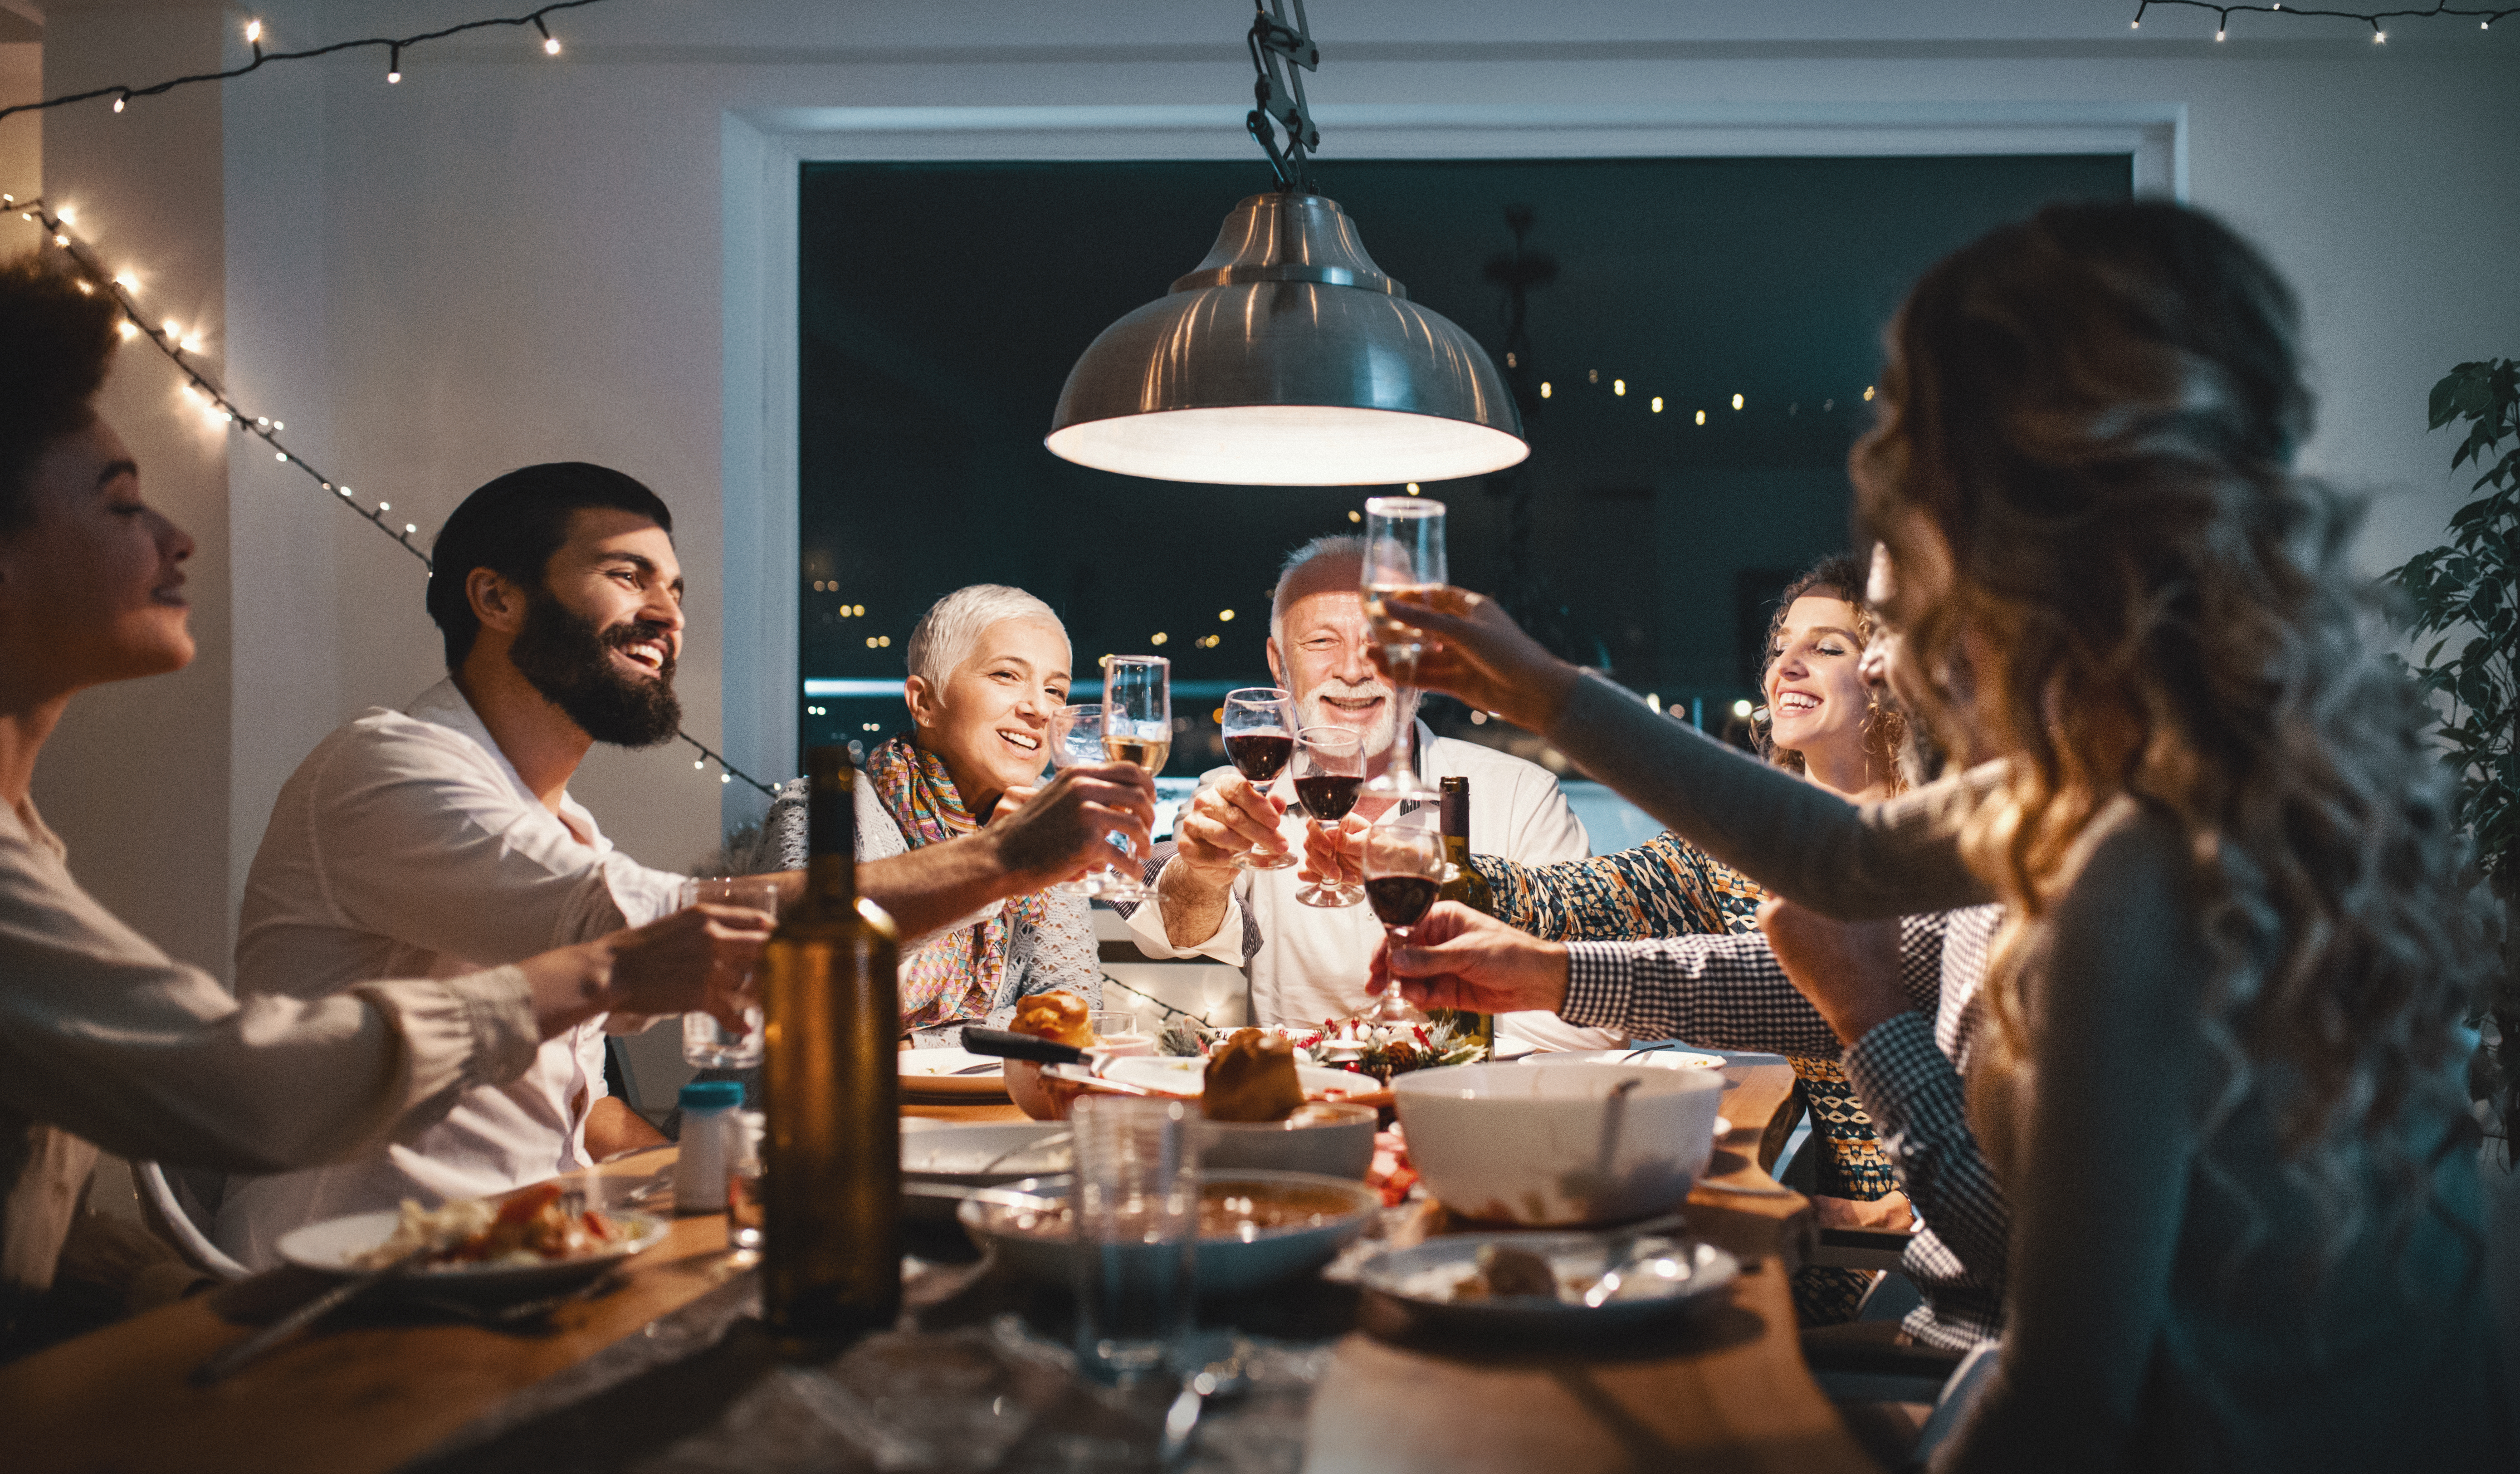 Familia cenando en Nochebuena | Fuente: Getty Images